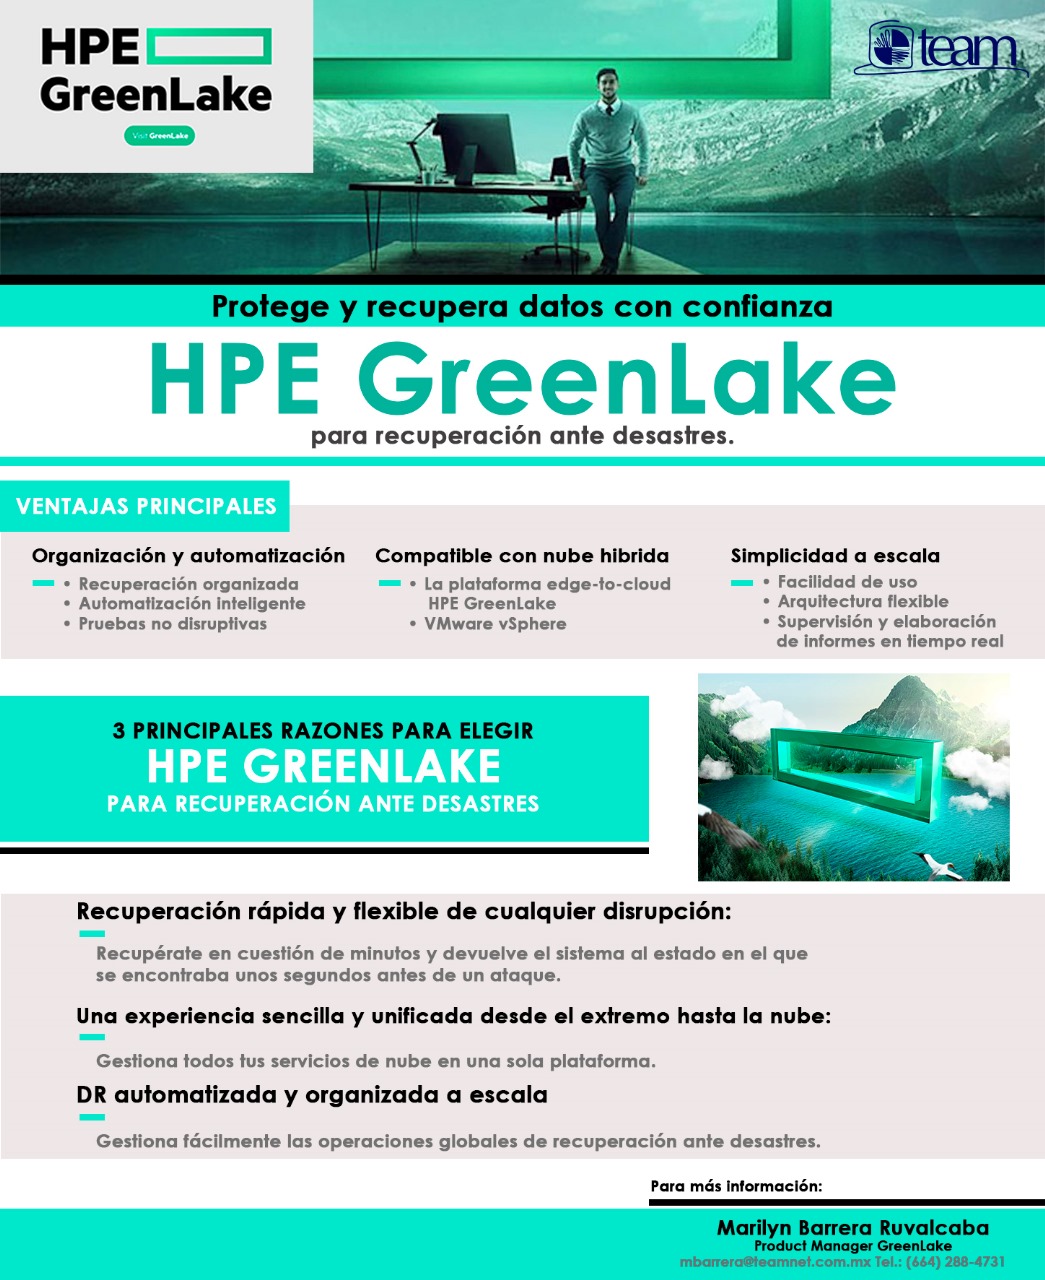 HPE greenLake